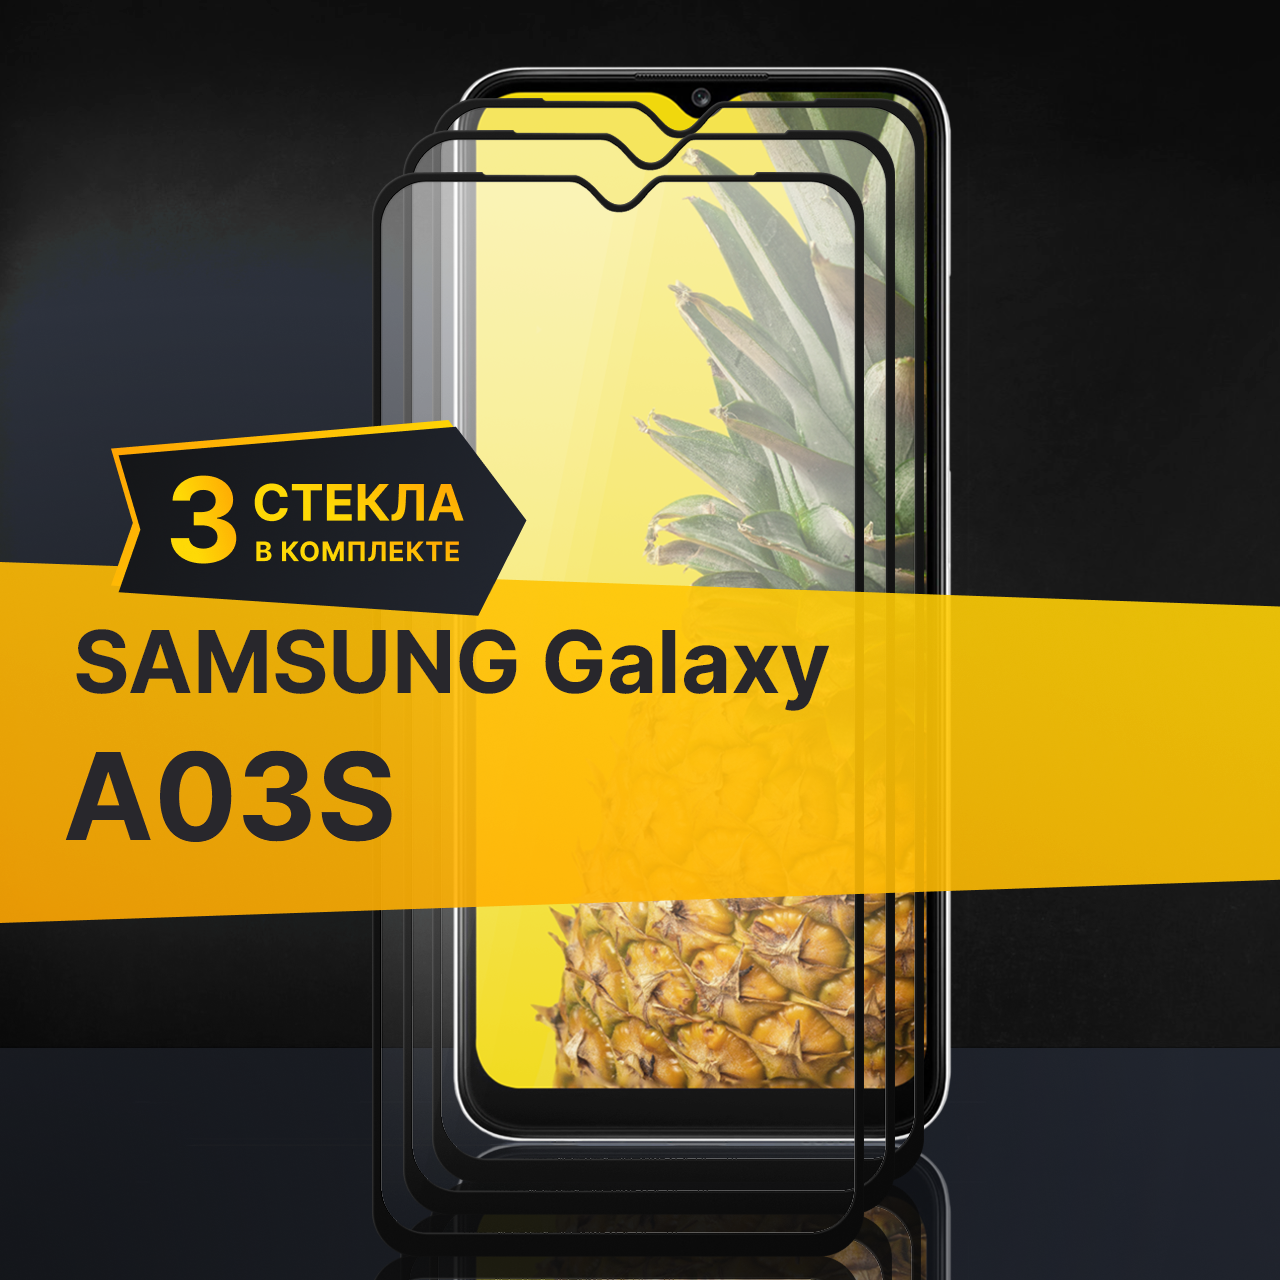 Комплект 3 шт. Противоударное защитное стекло для телефона Samsung Galaxy A03S / Полноклеевое 3D стекло с олеофобным покрытием на смартфон Самсунг Галакси А03С / С черной рамкой